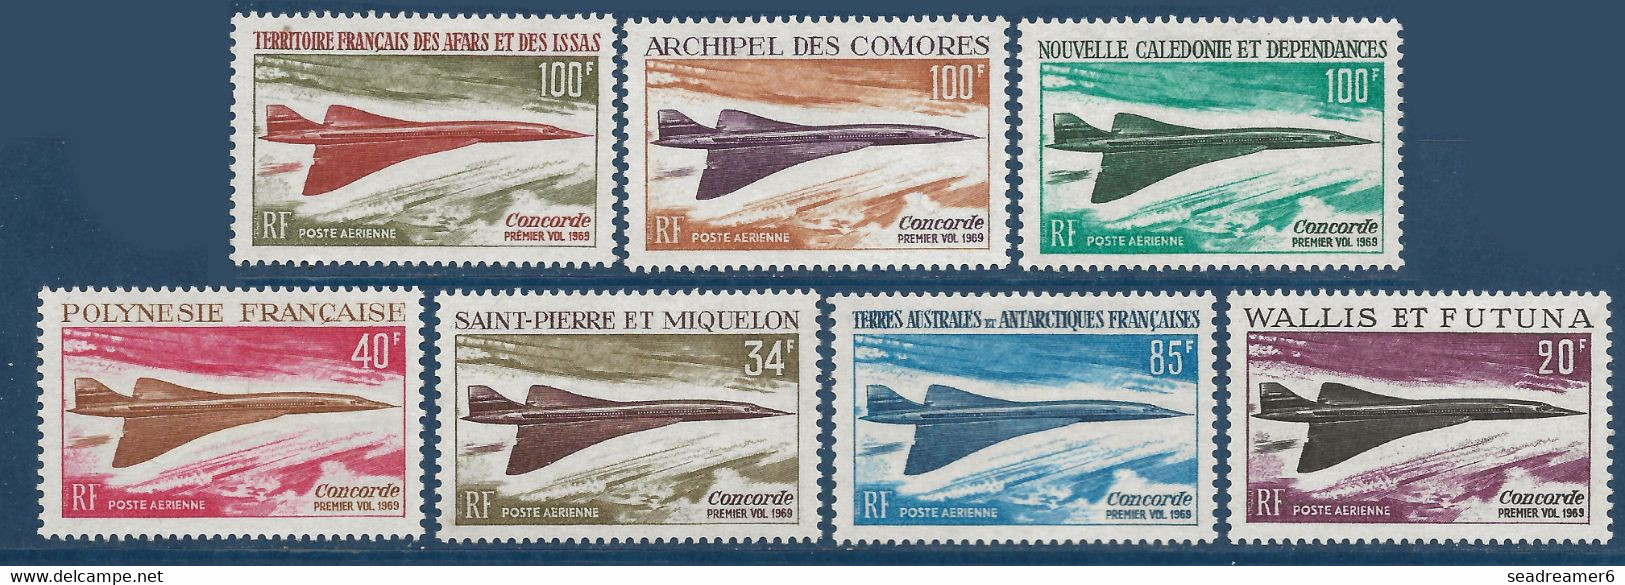 France Colonies Série Des Concordes 7 Valeurs Fraicheur Postale TTB - 1969 Avion Supersonique Concorde